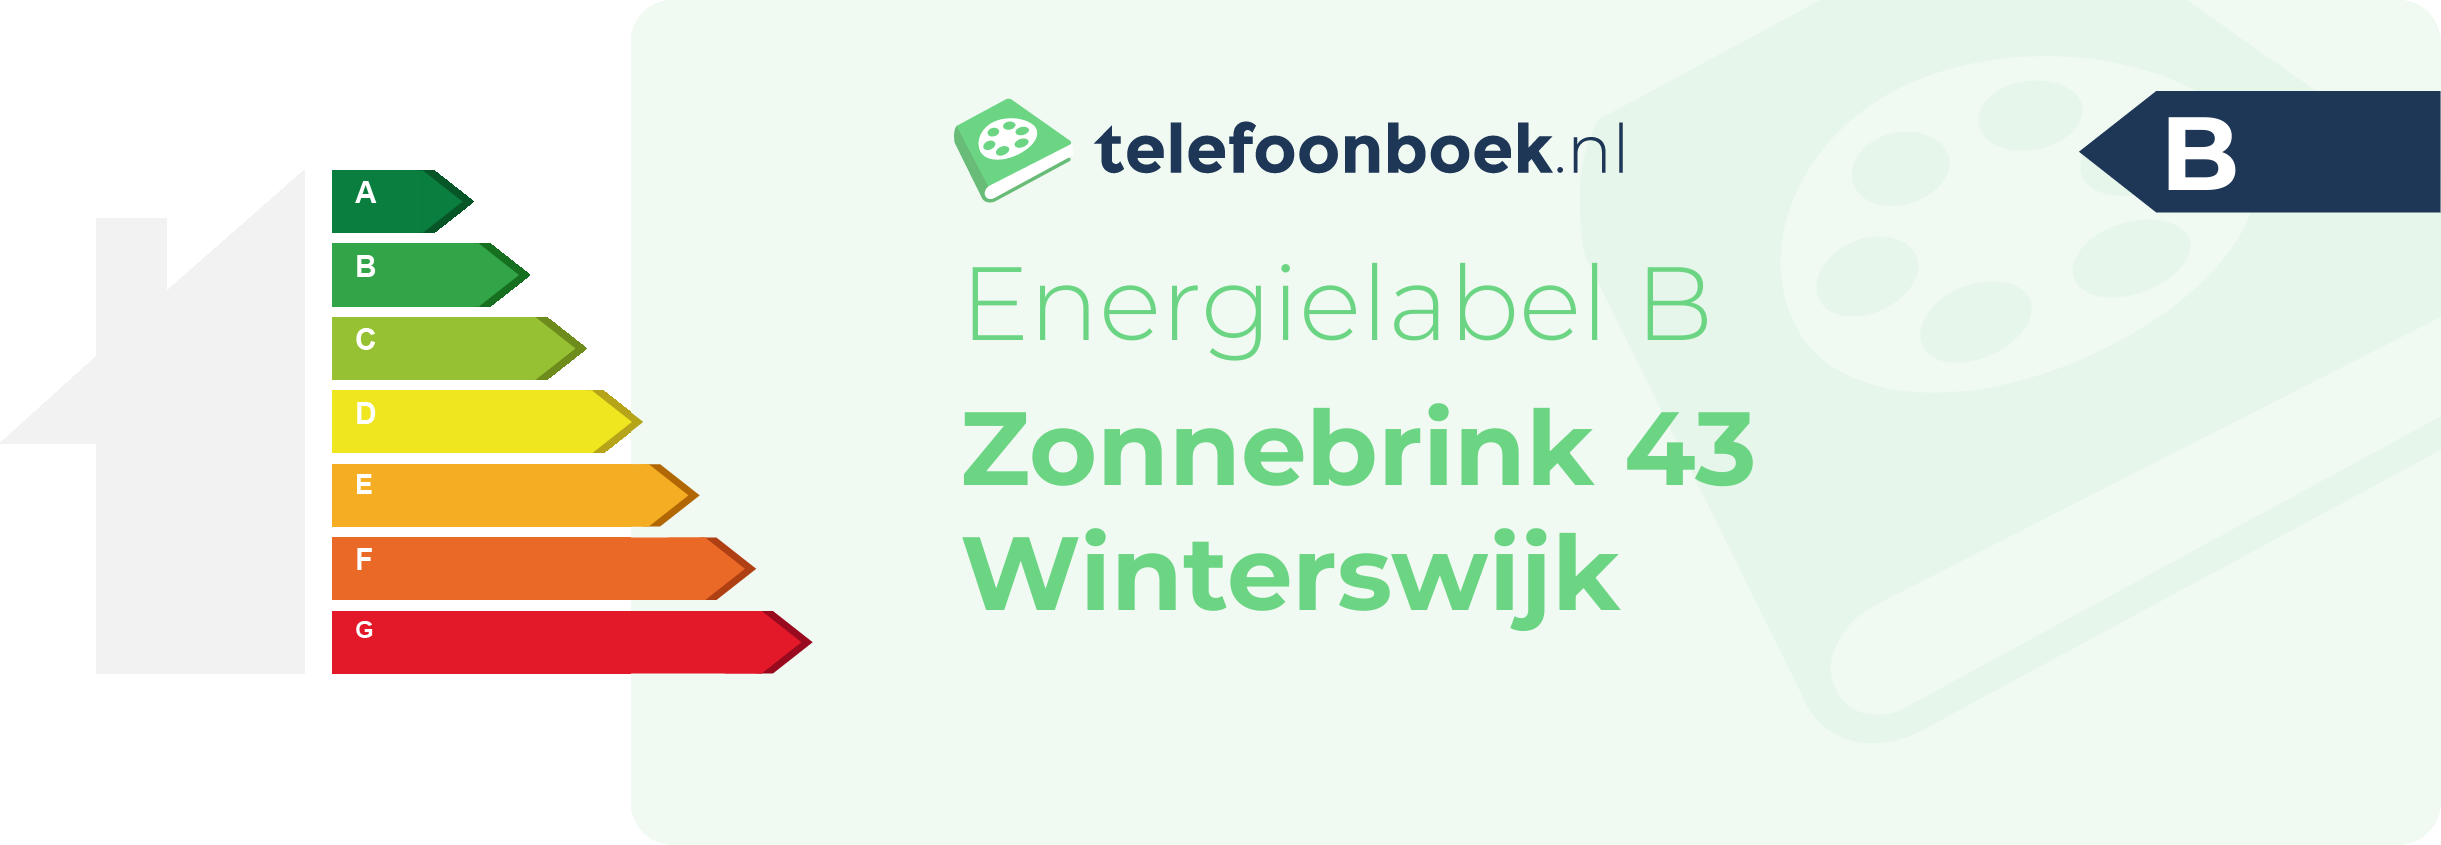 Energielabel Zonnebrink 43 Winterswijk